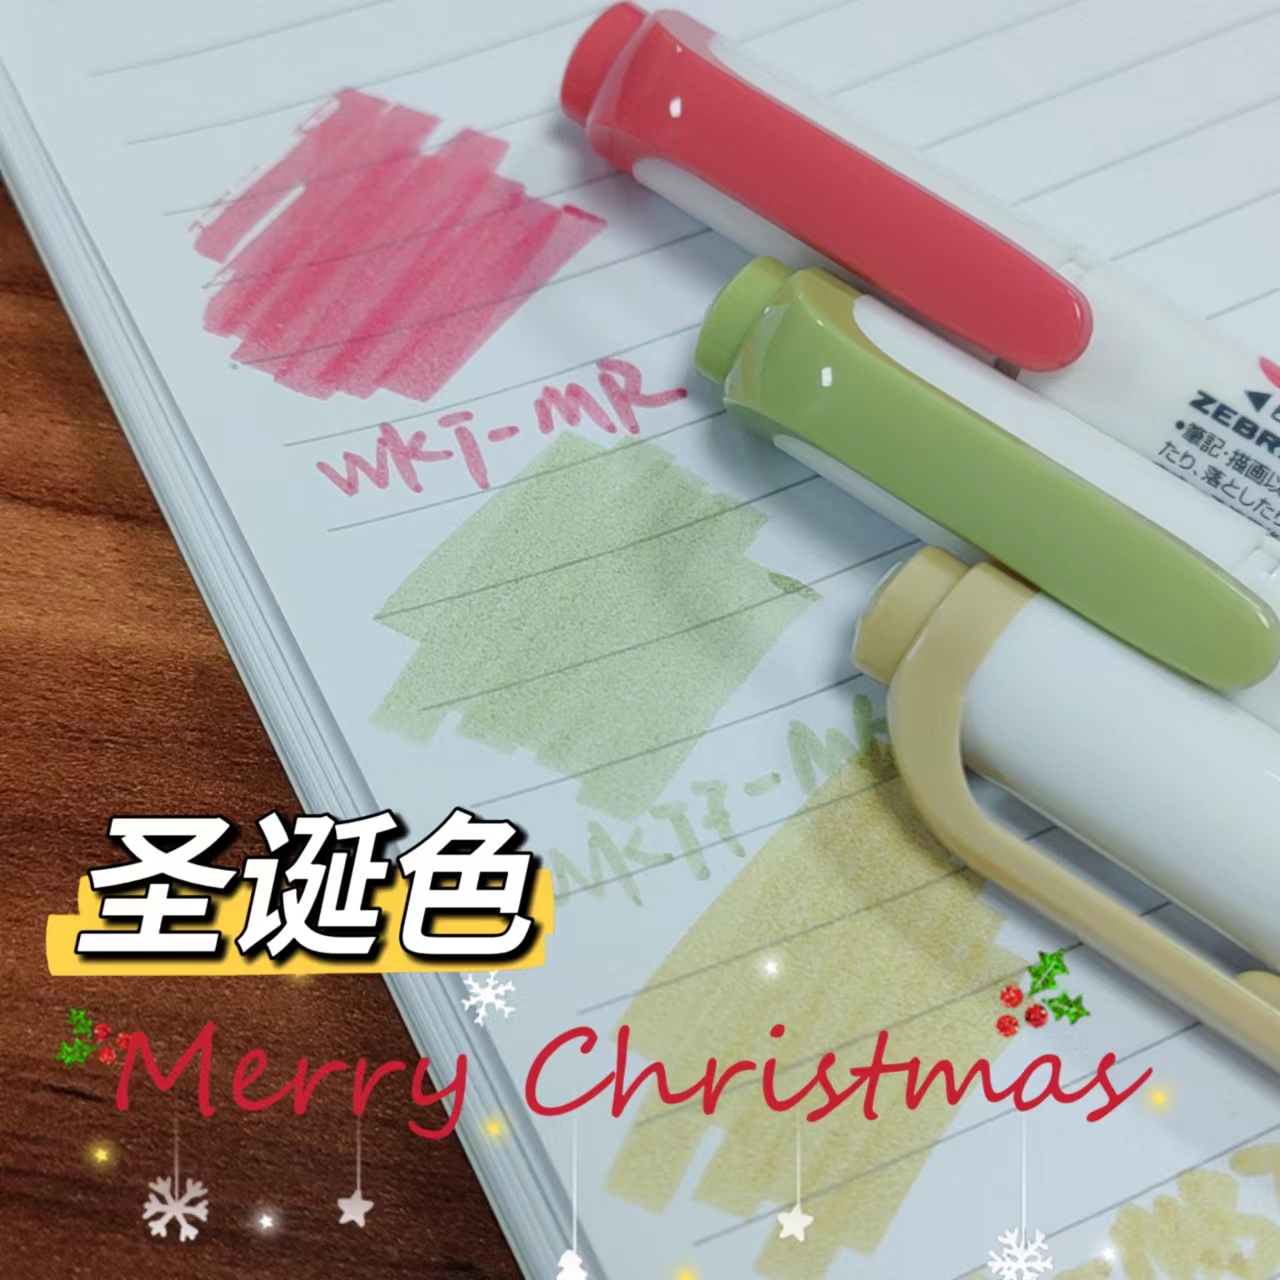 圣诞色套装限定日本斑马荧光色笔JJ15彩色中性笔0.5手帐用珠光金属色贺卡笔学生用进口文具手绘绘图涂鸦笔